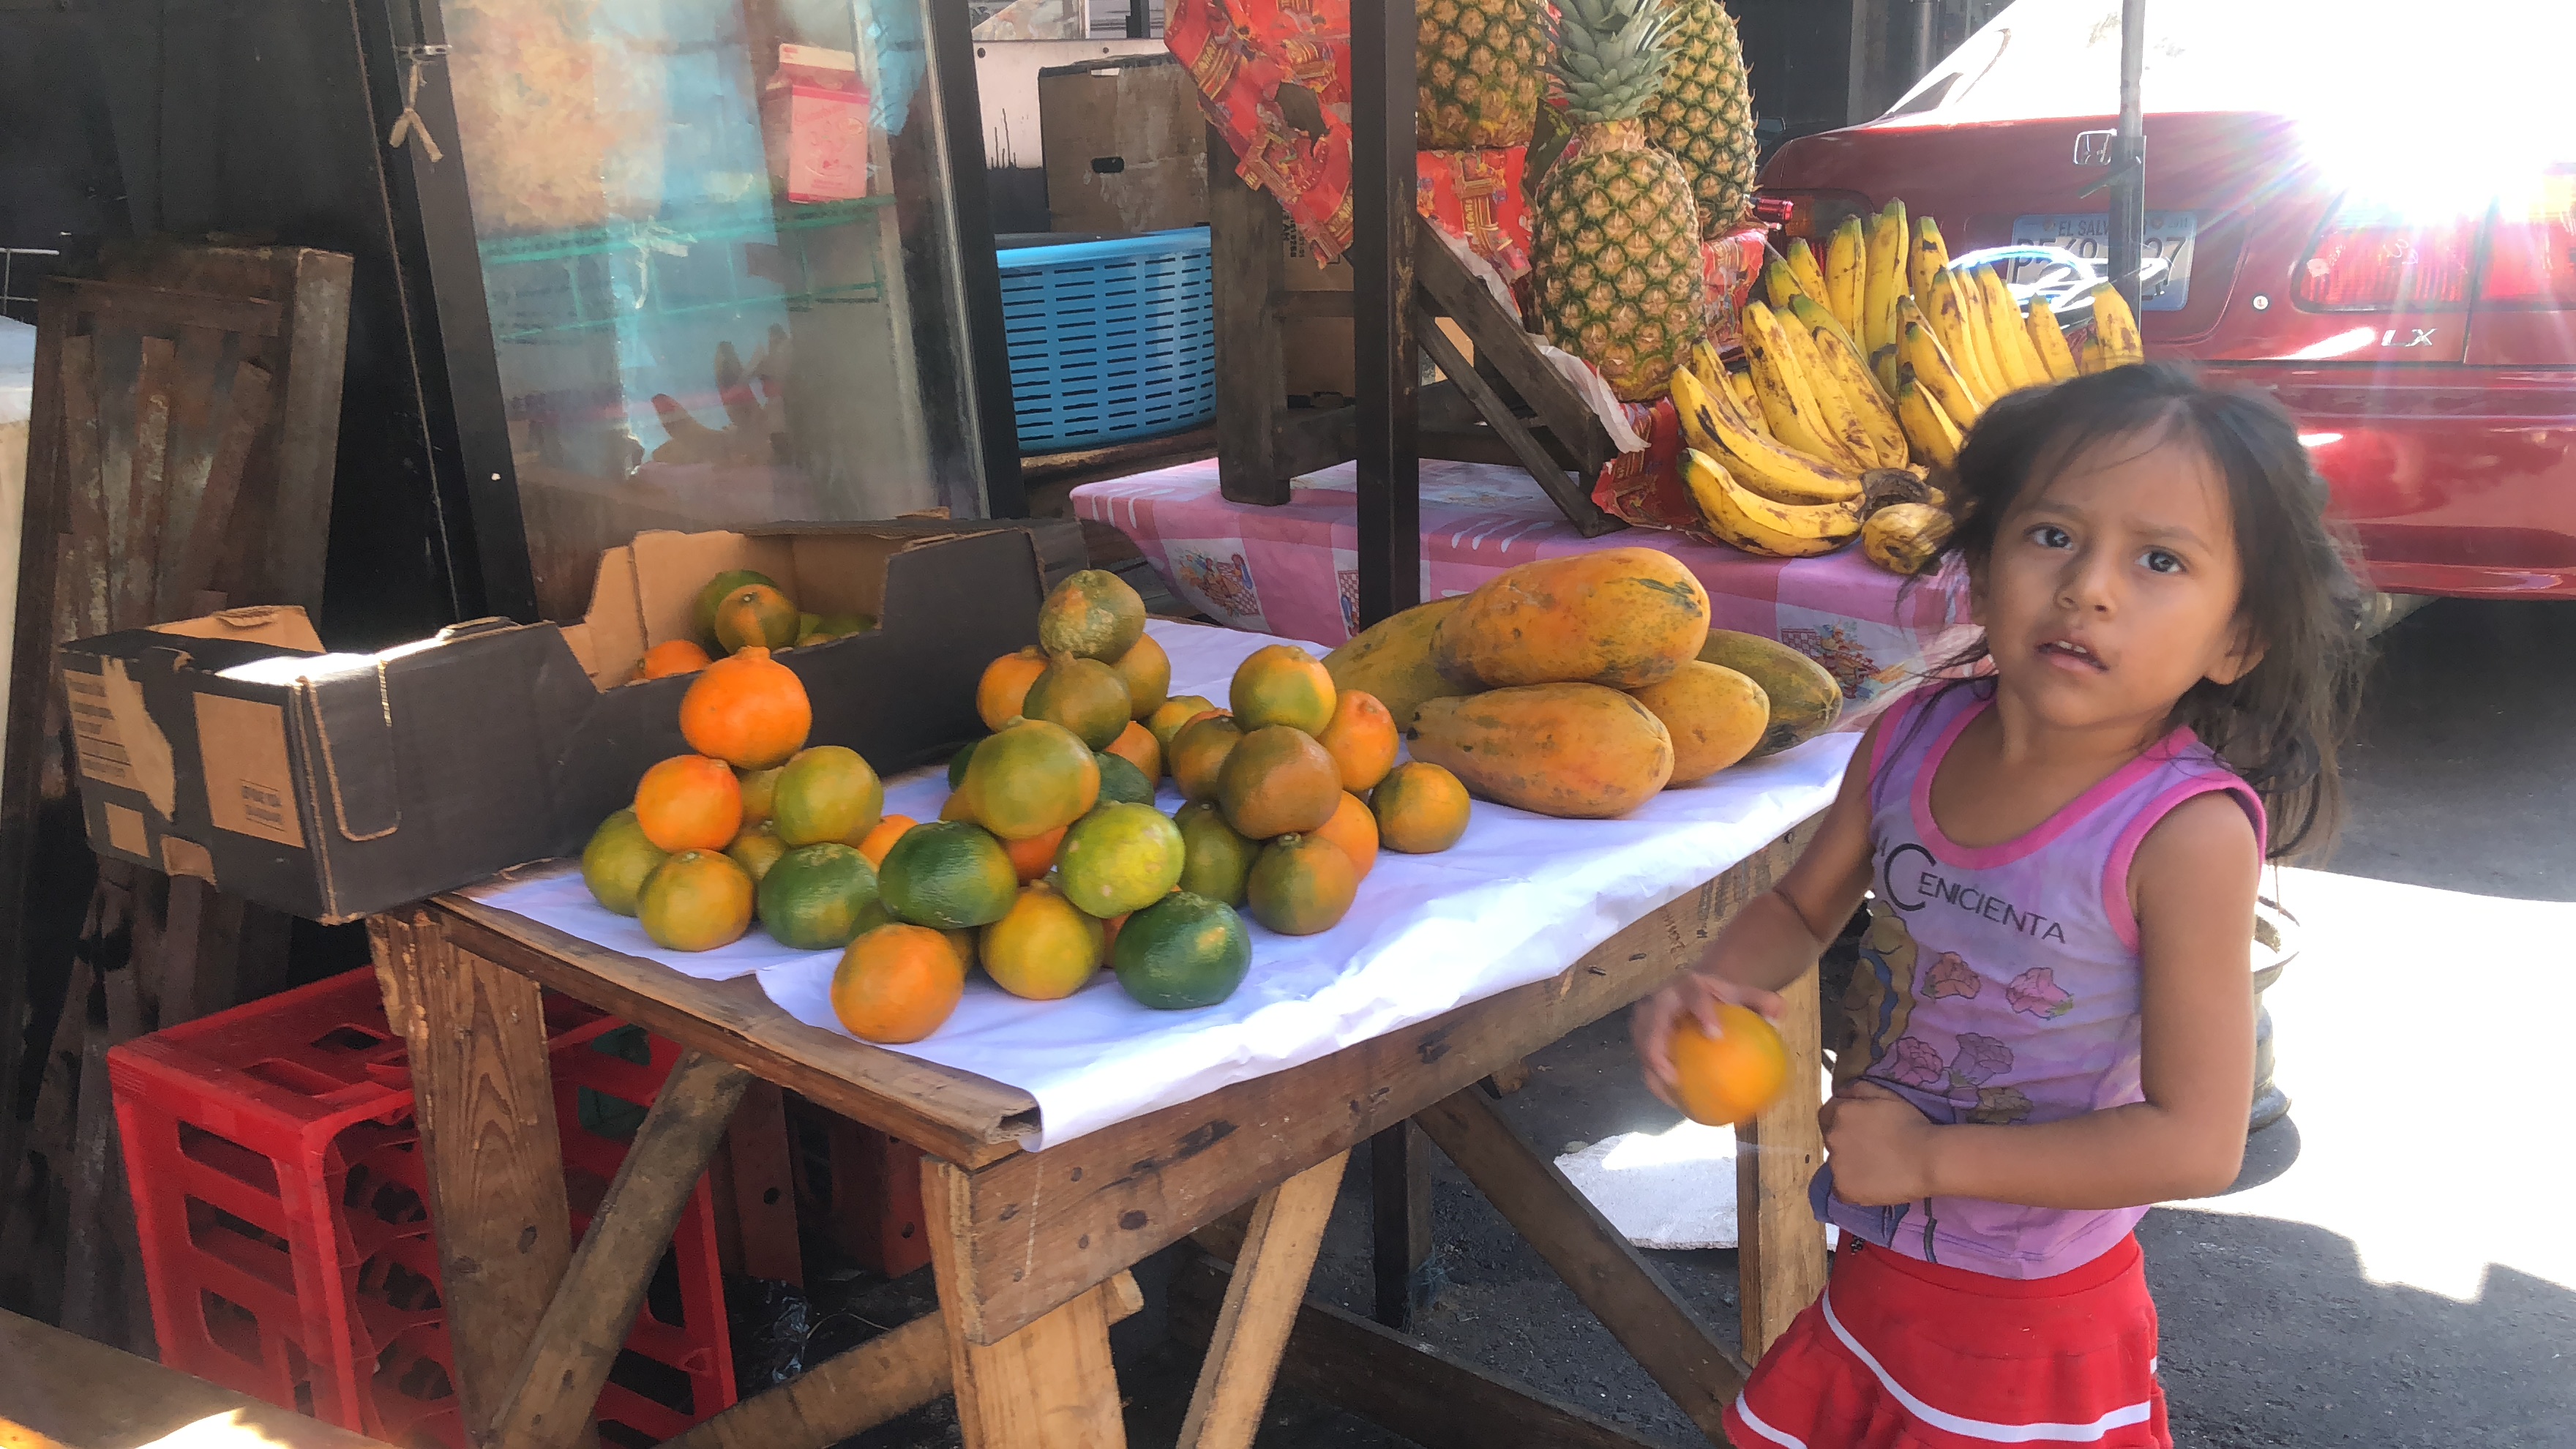 Street market in El Salvador